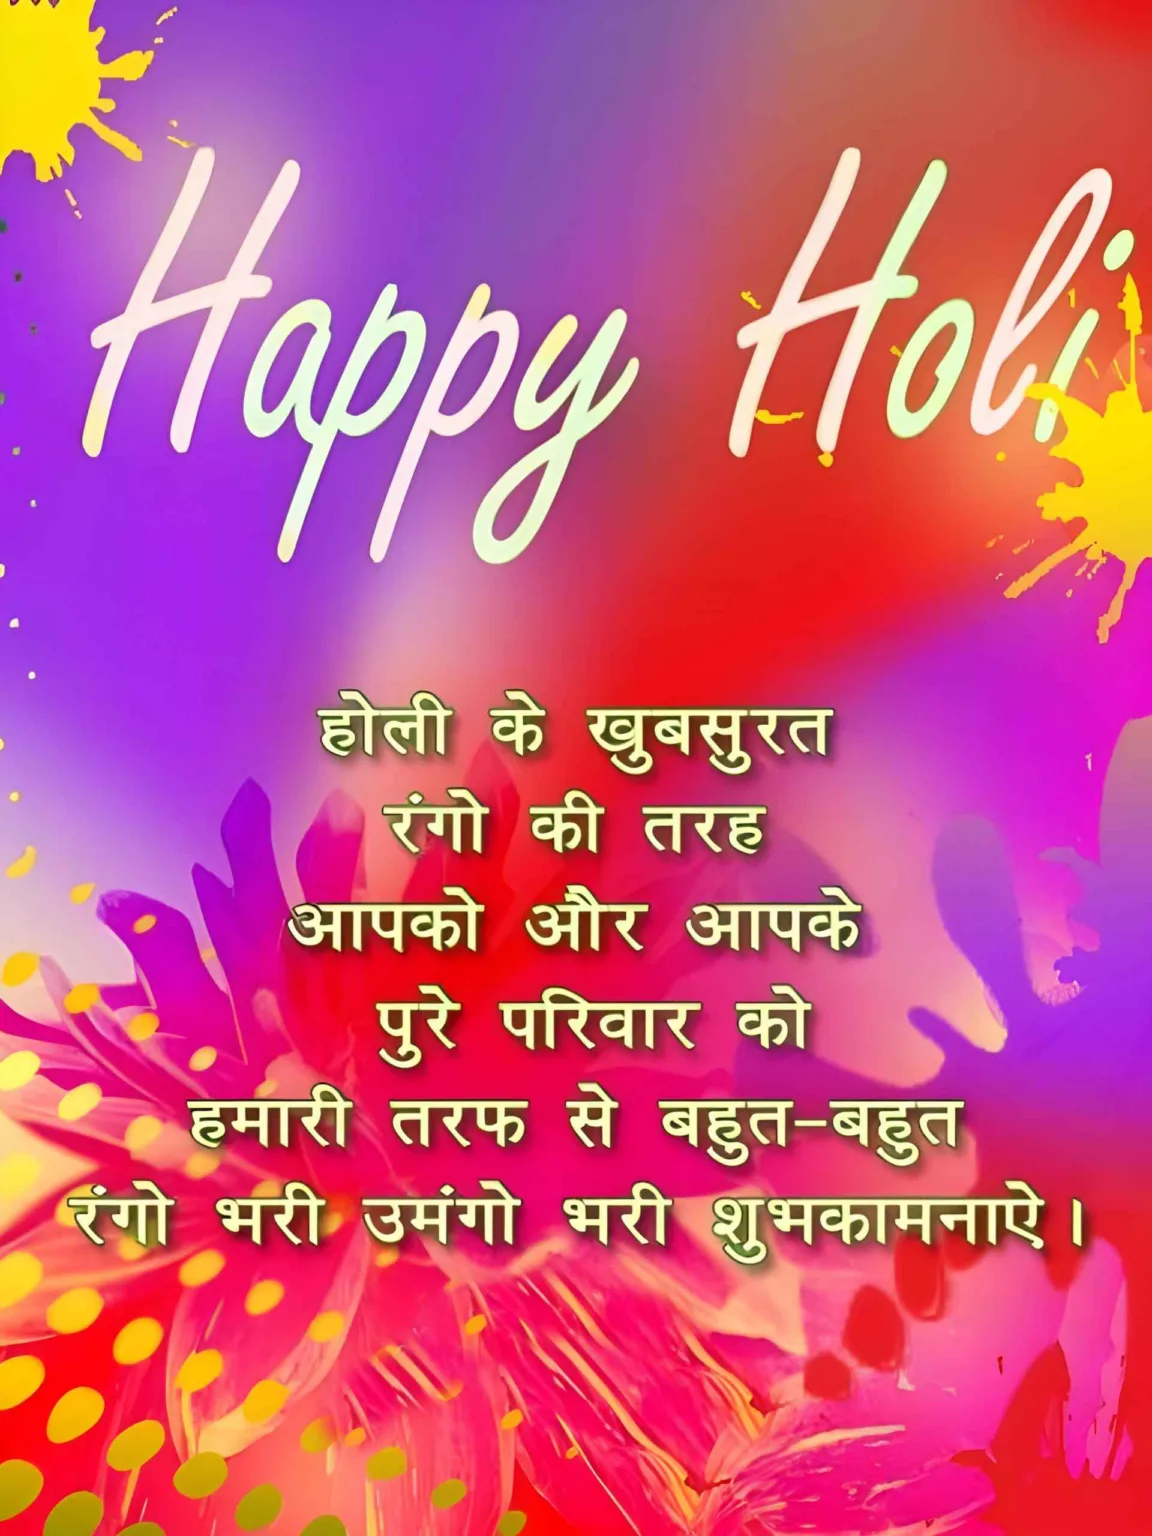 Happy Holi Wishes in Hindi HD Image